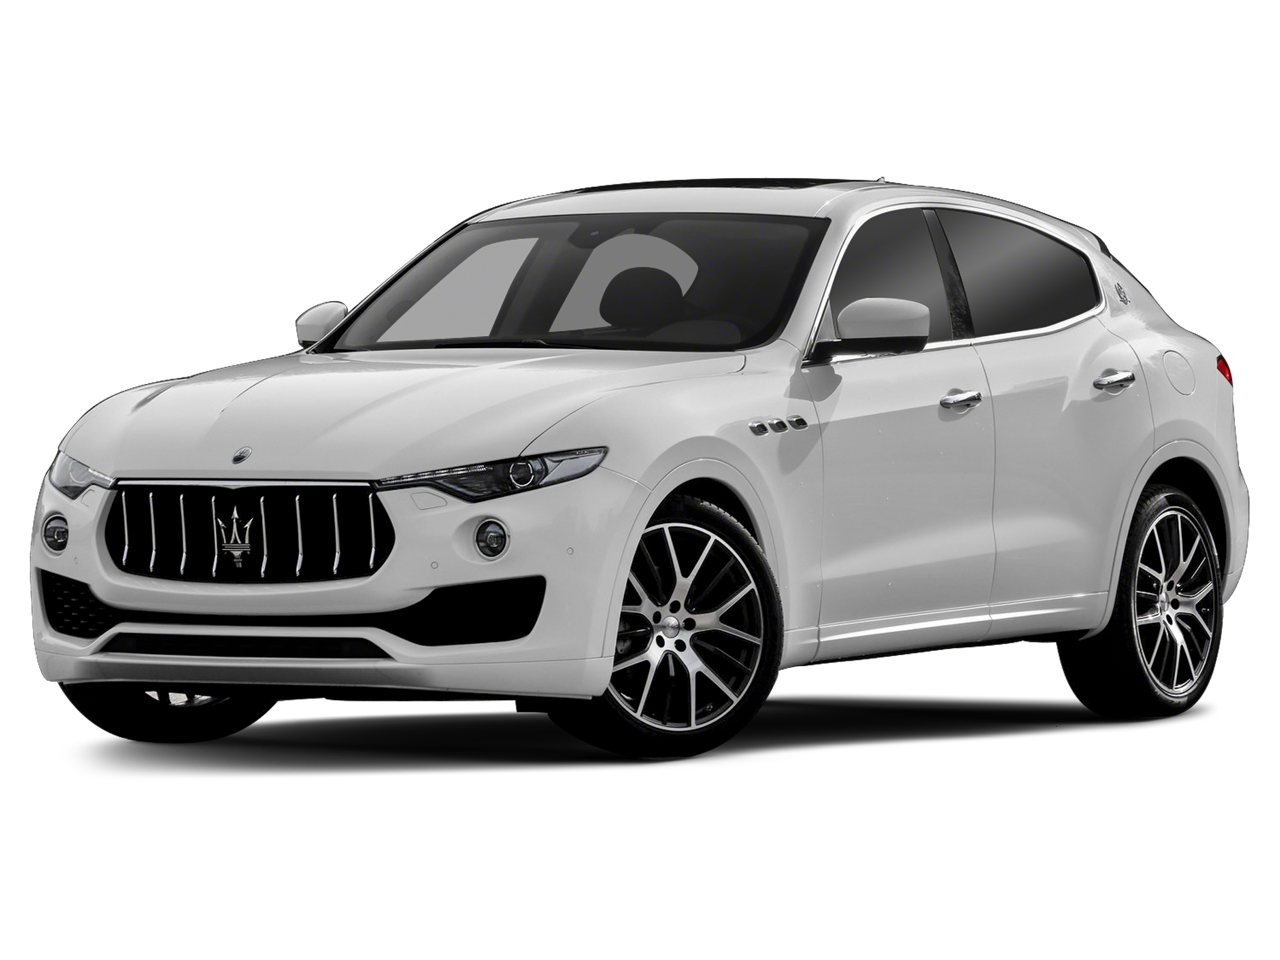 2019 Maserati Levante GTS